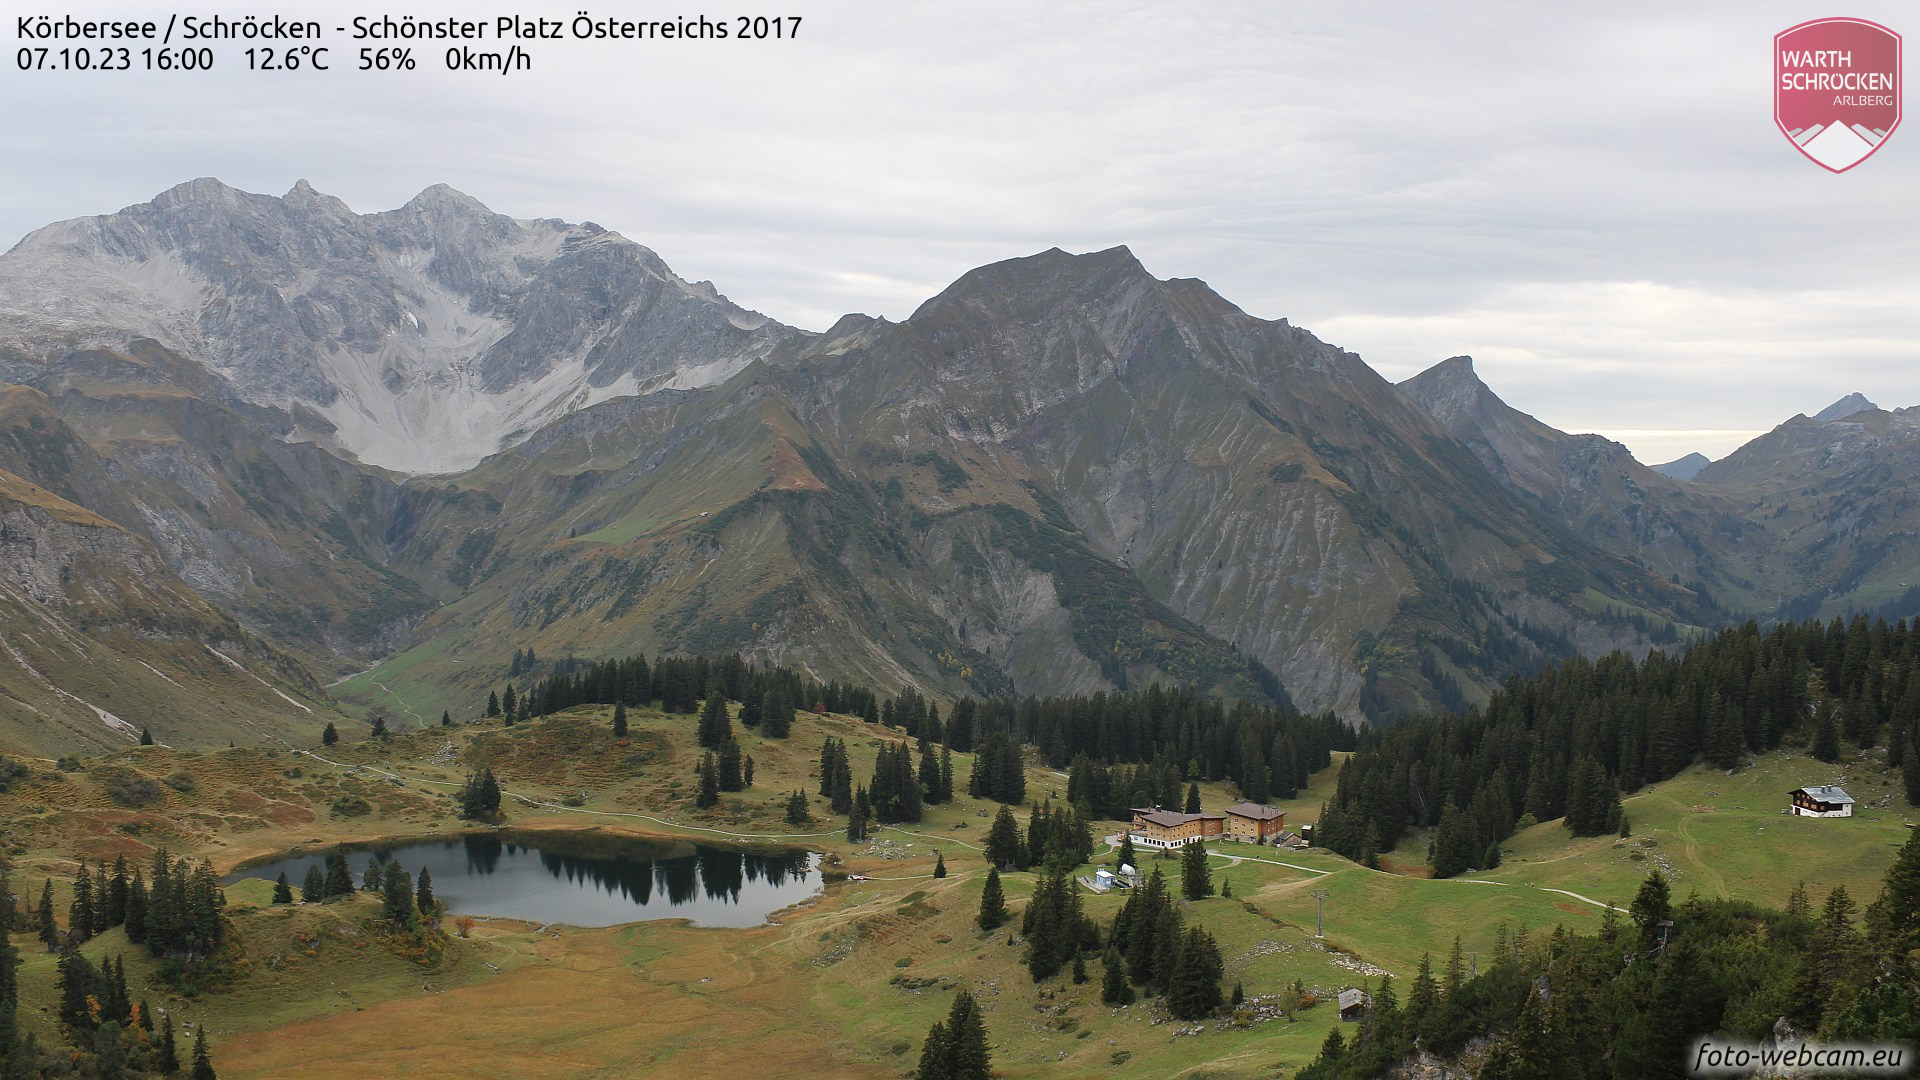 Alpen - 'zomerherfst' duurt voort, eindelijk verandering in zicht?